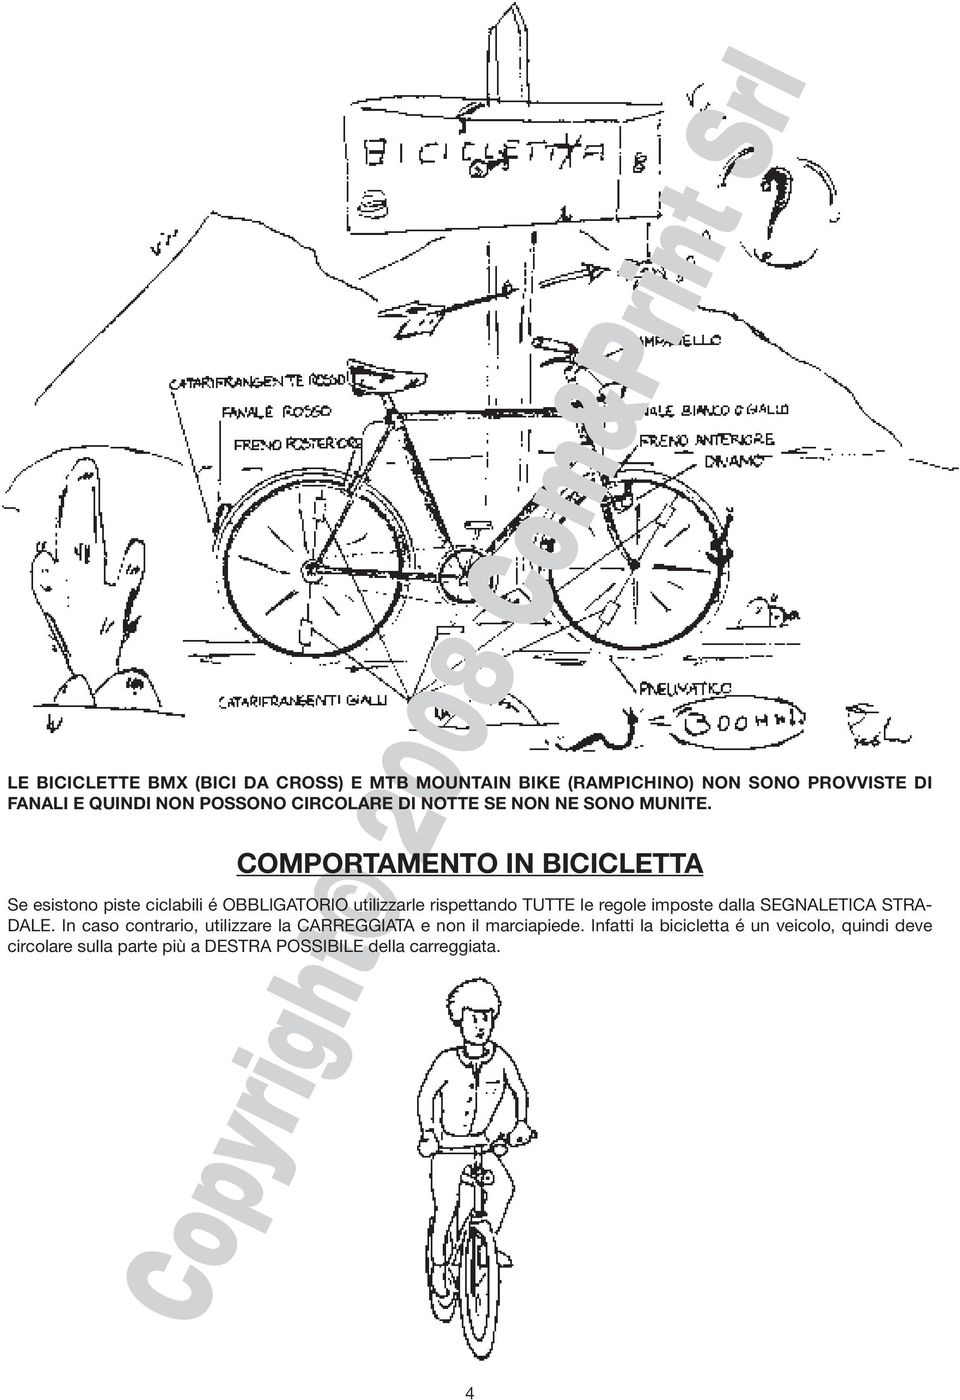 COMPORTAMENTO IN BICICLETTA Se esistono piste ciclabili é OBBLIGATORIO utilizzarle rispettando TUTTE le regole imposte